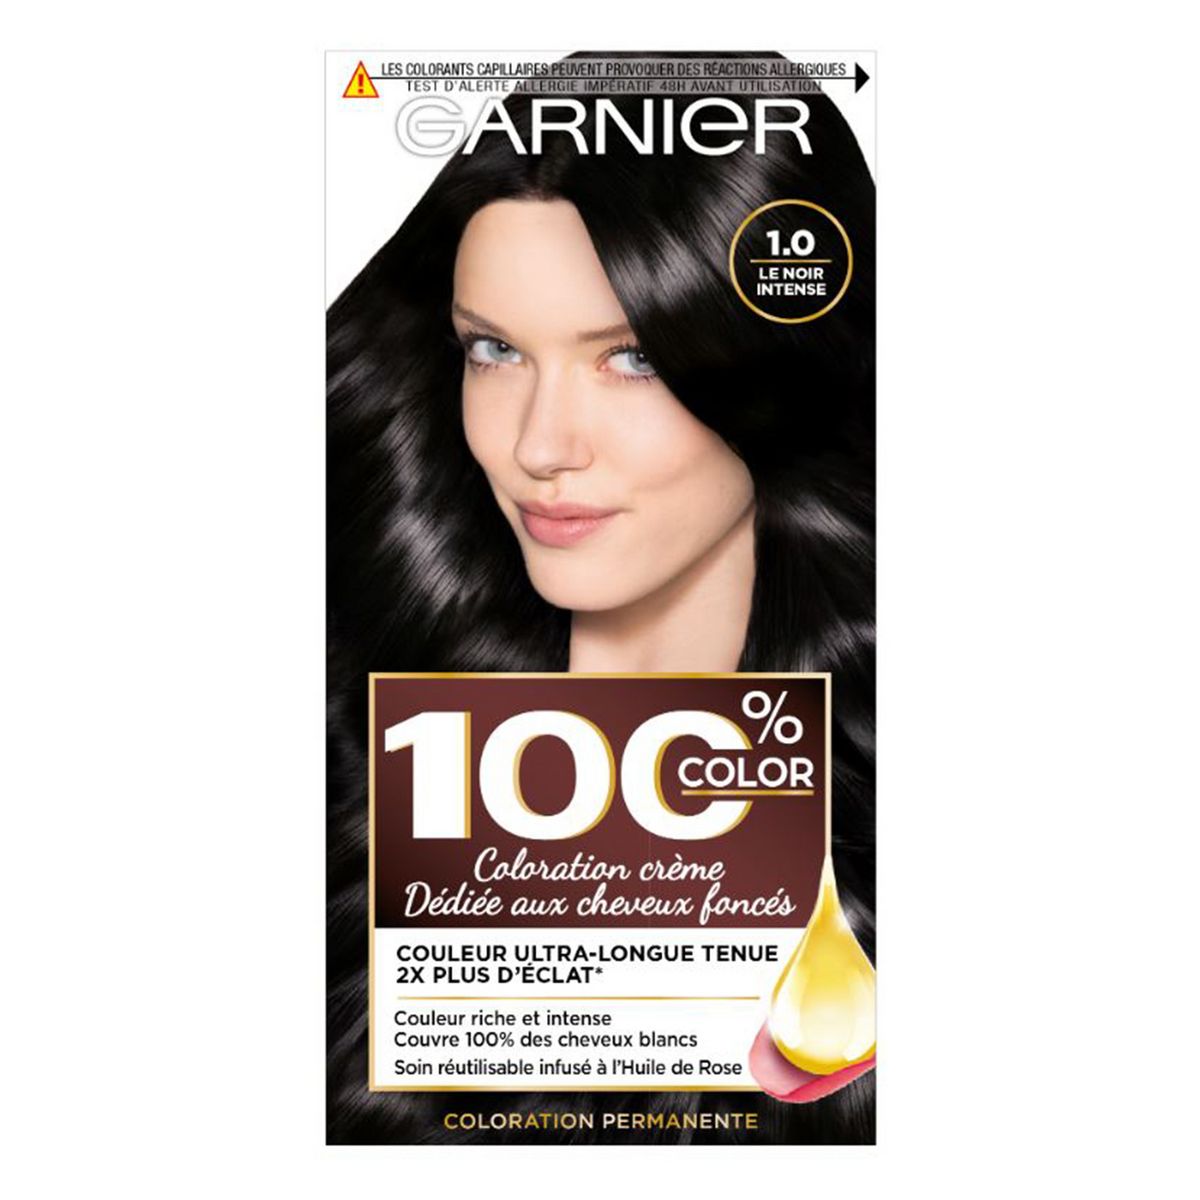 GARNIER 100% Color crème coloration pour cheveux foncés 1.0 noir